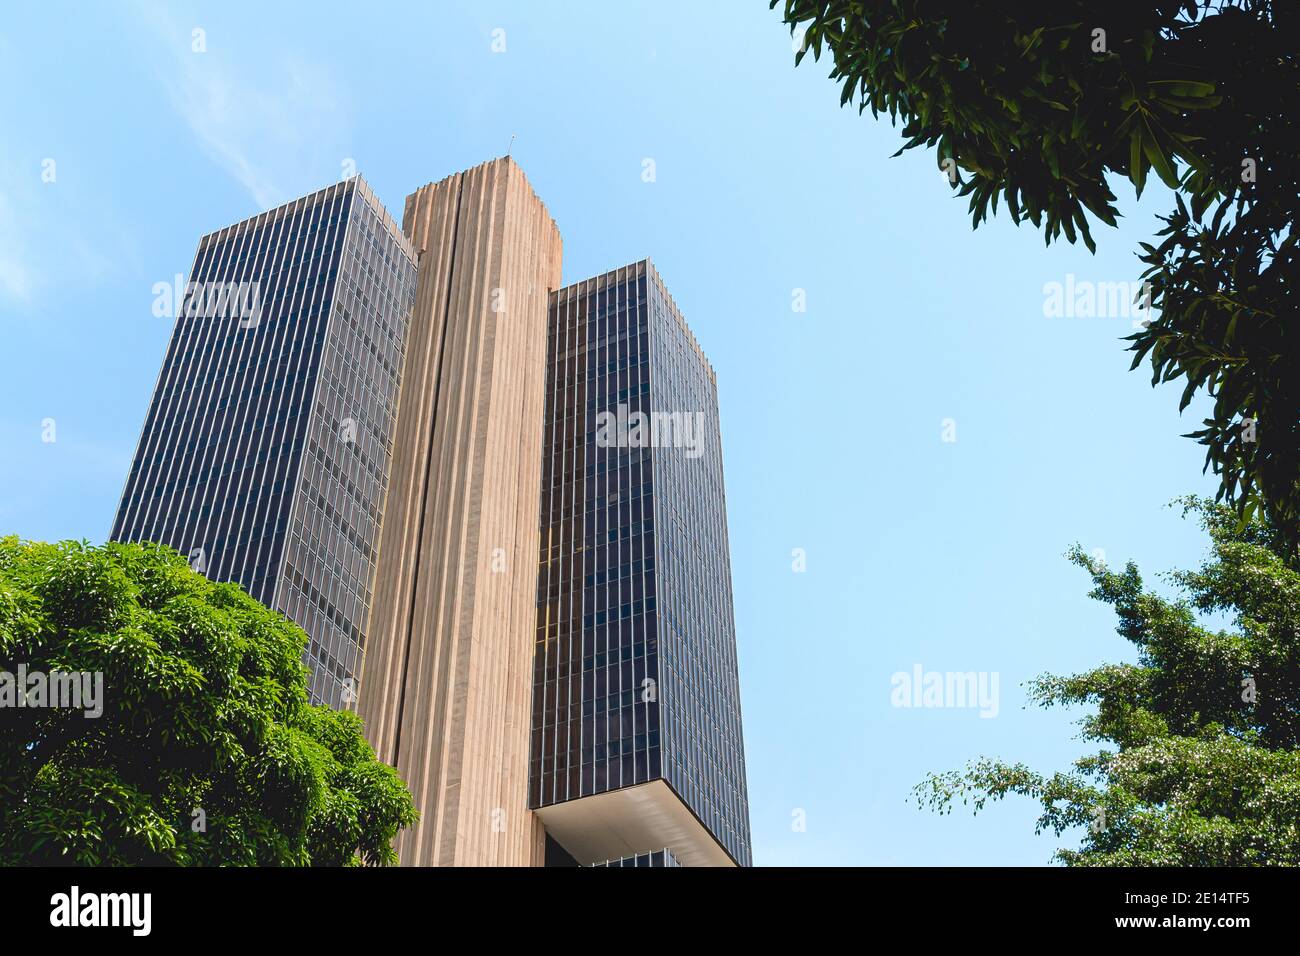 Central Bank of Brazil ( Banco Central do Brasil - BACEN ). Stock Photo